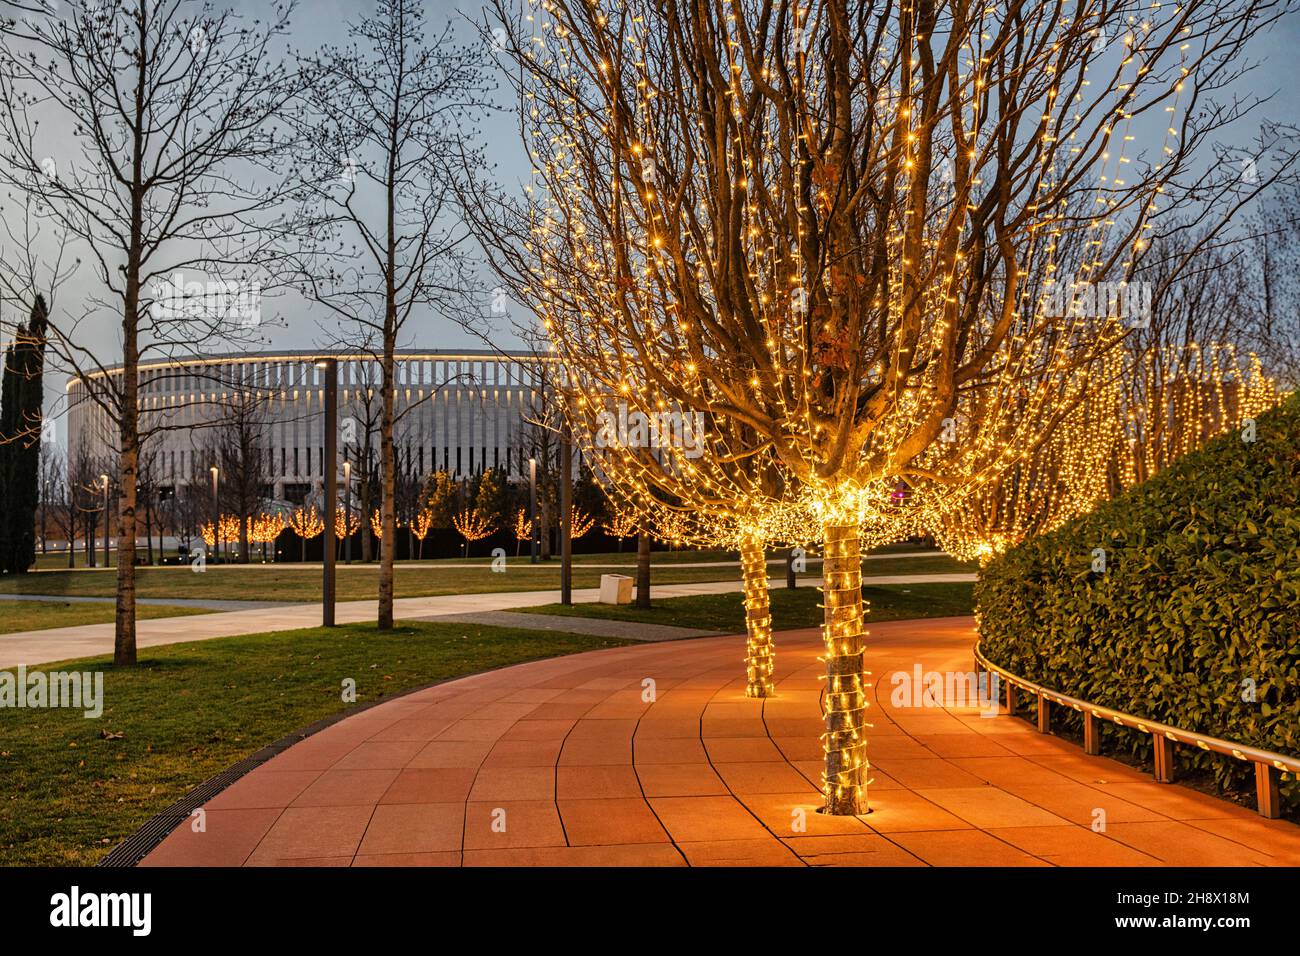 Illuminated trees in a park Stock Photo